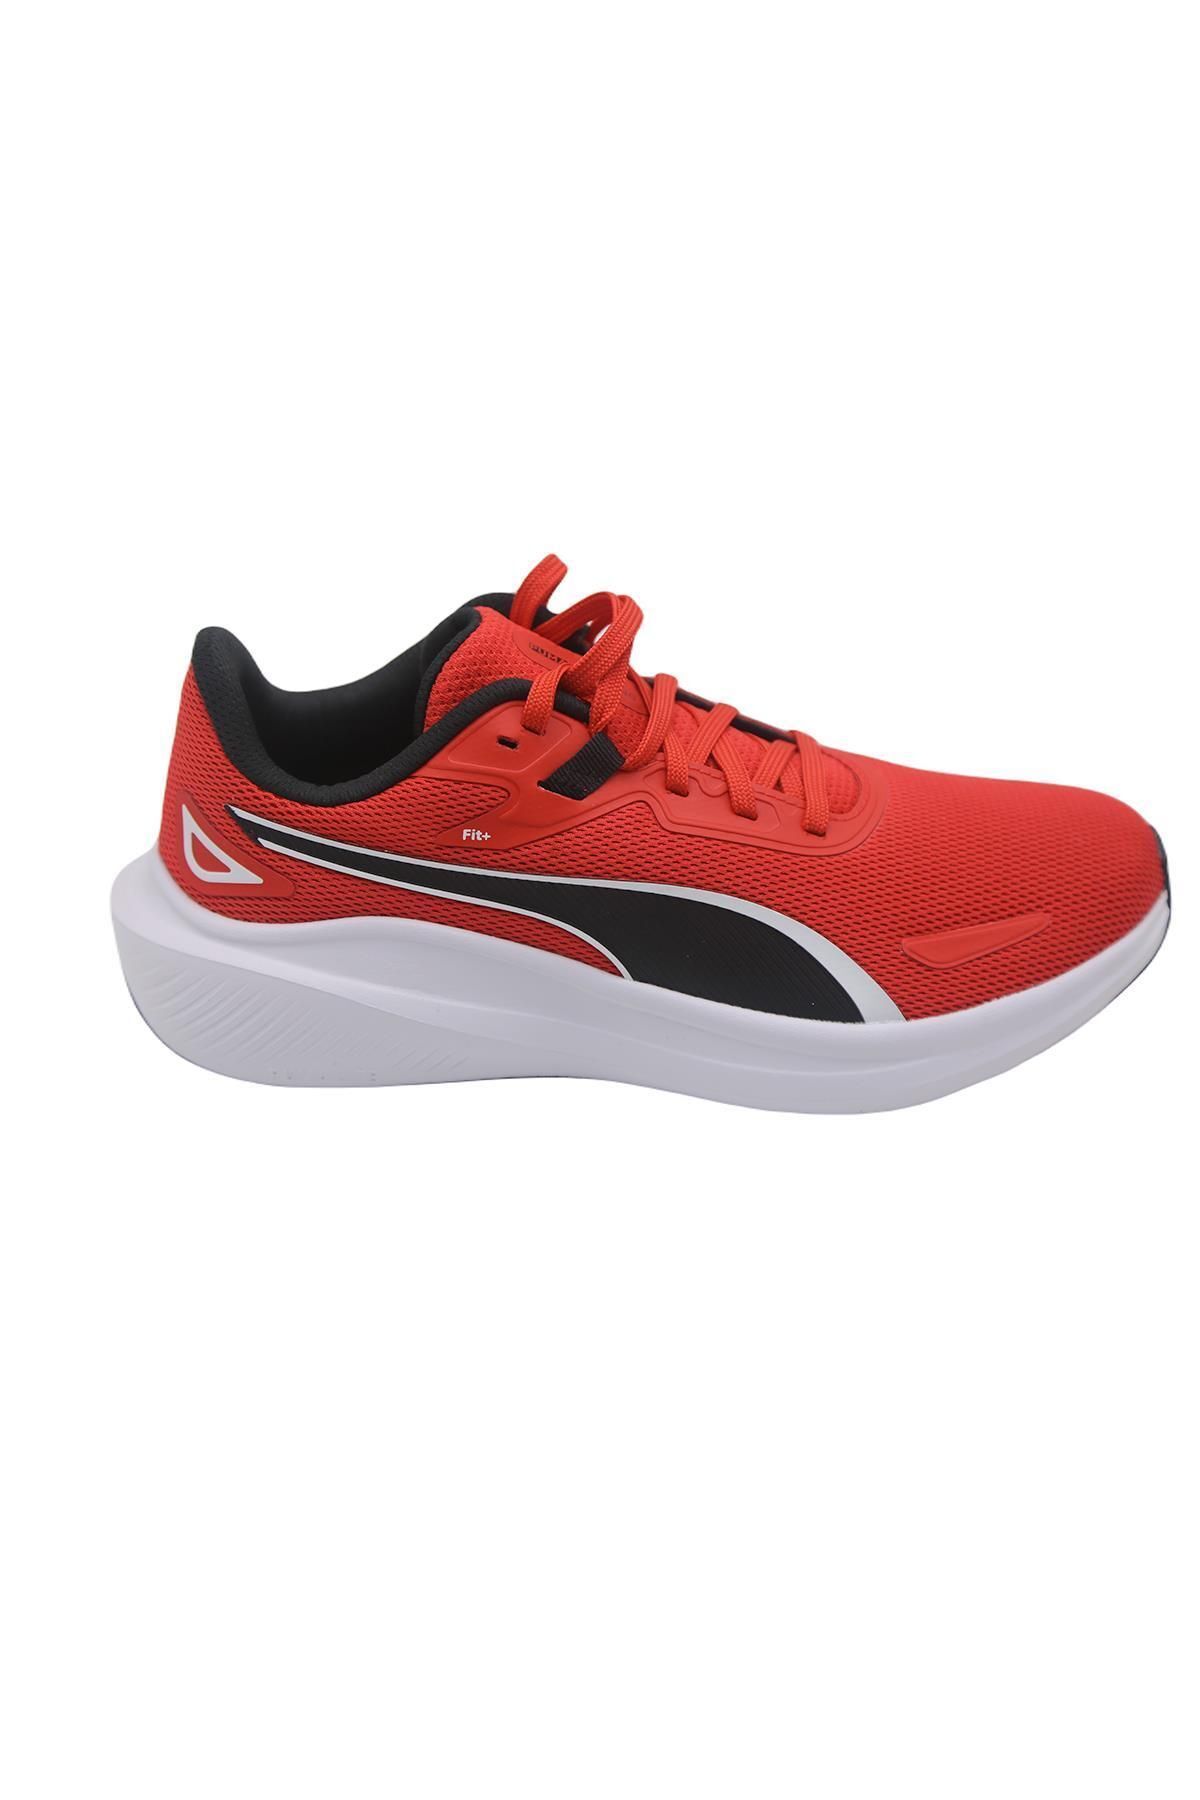 Puma 379437 08 Skyrocket Lite-For All Time Red-Black Spor Ayakkabı Kırmızı